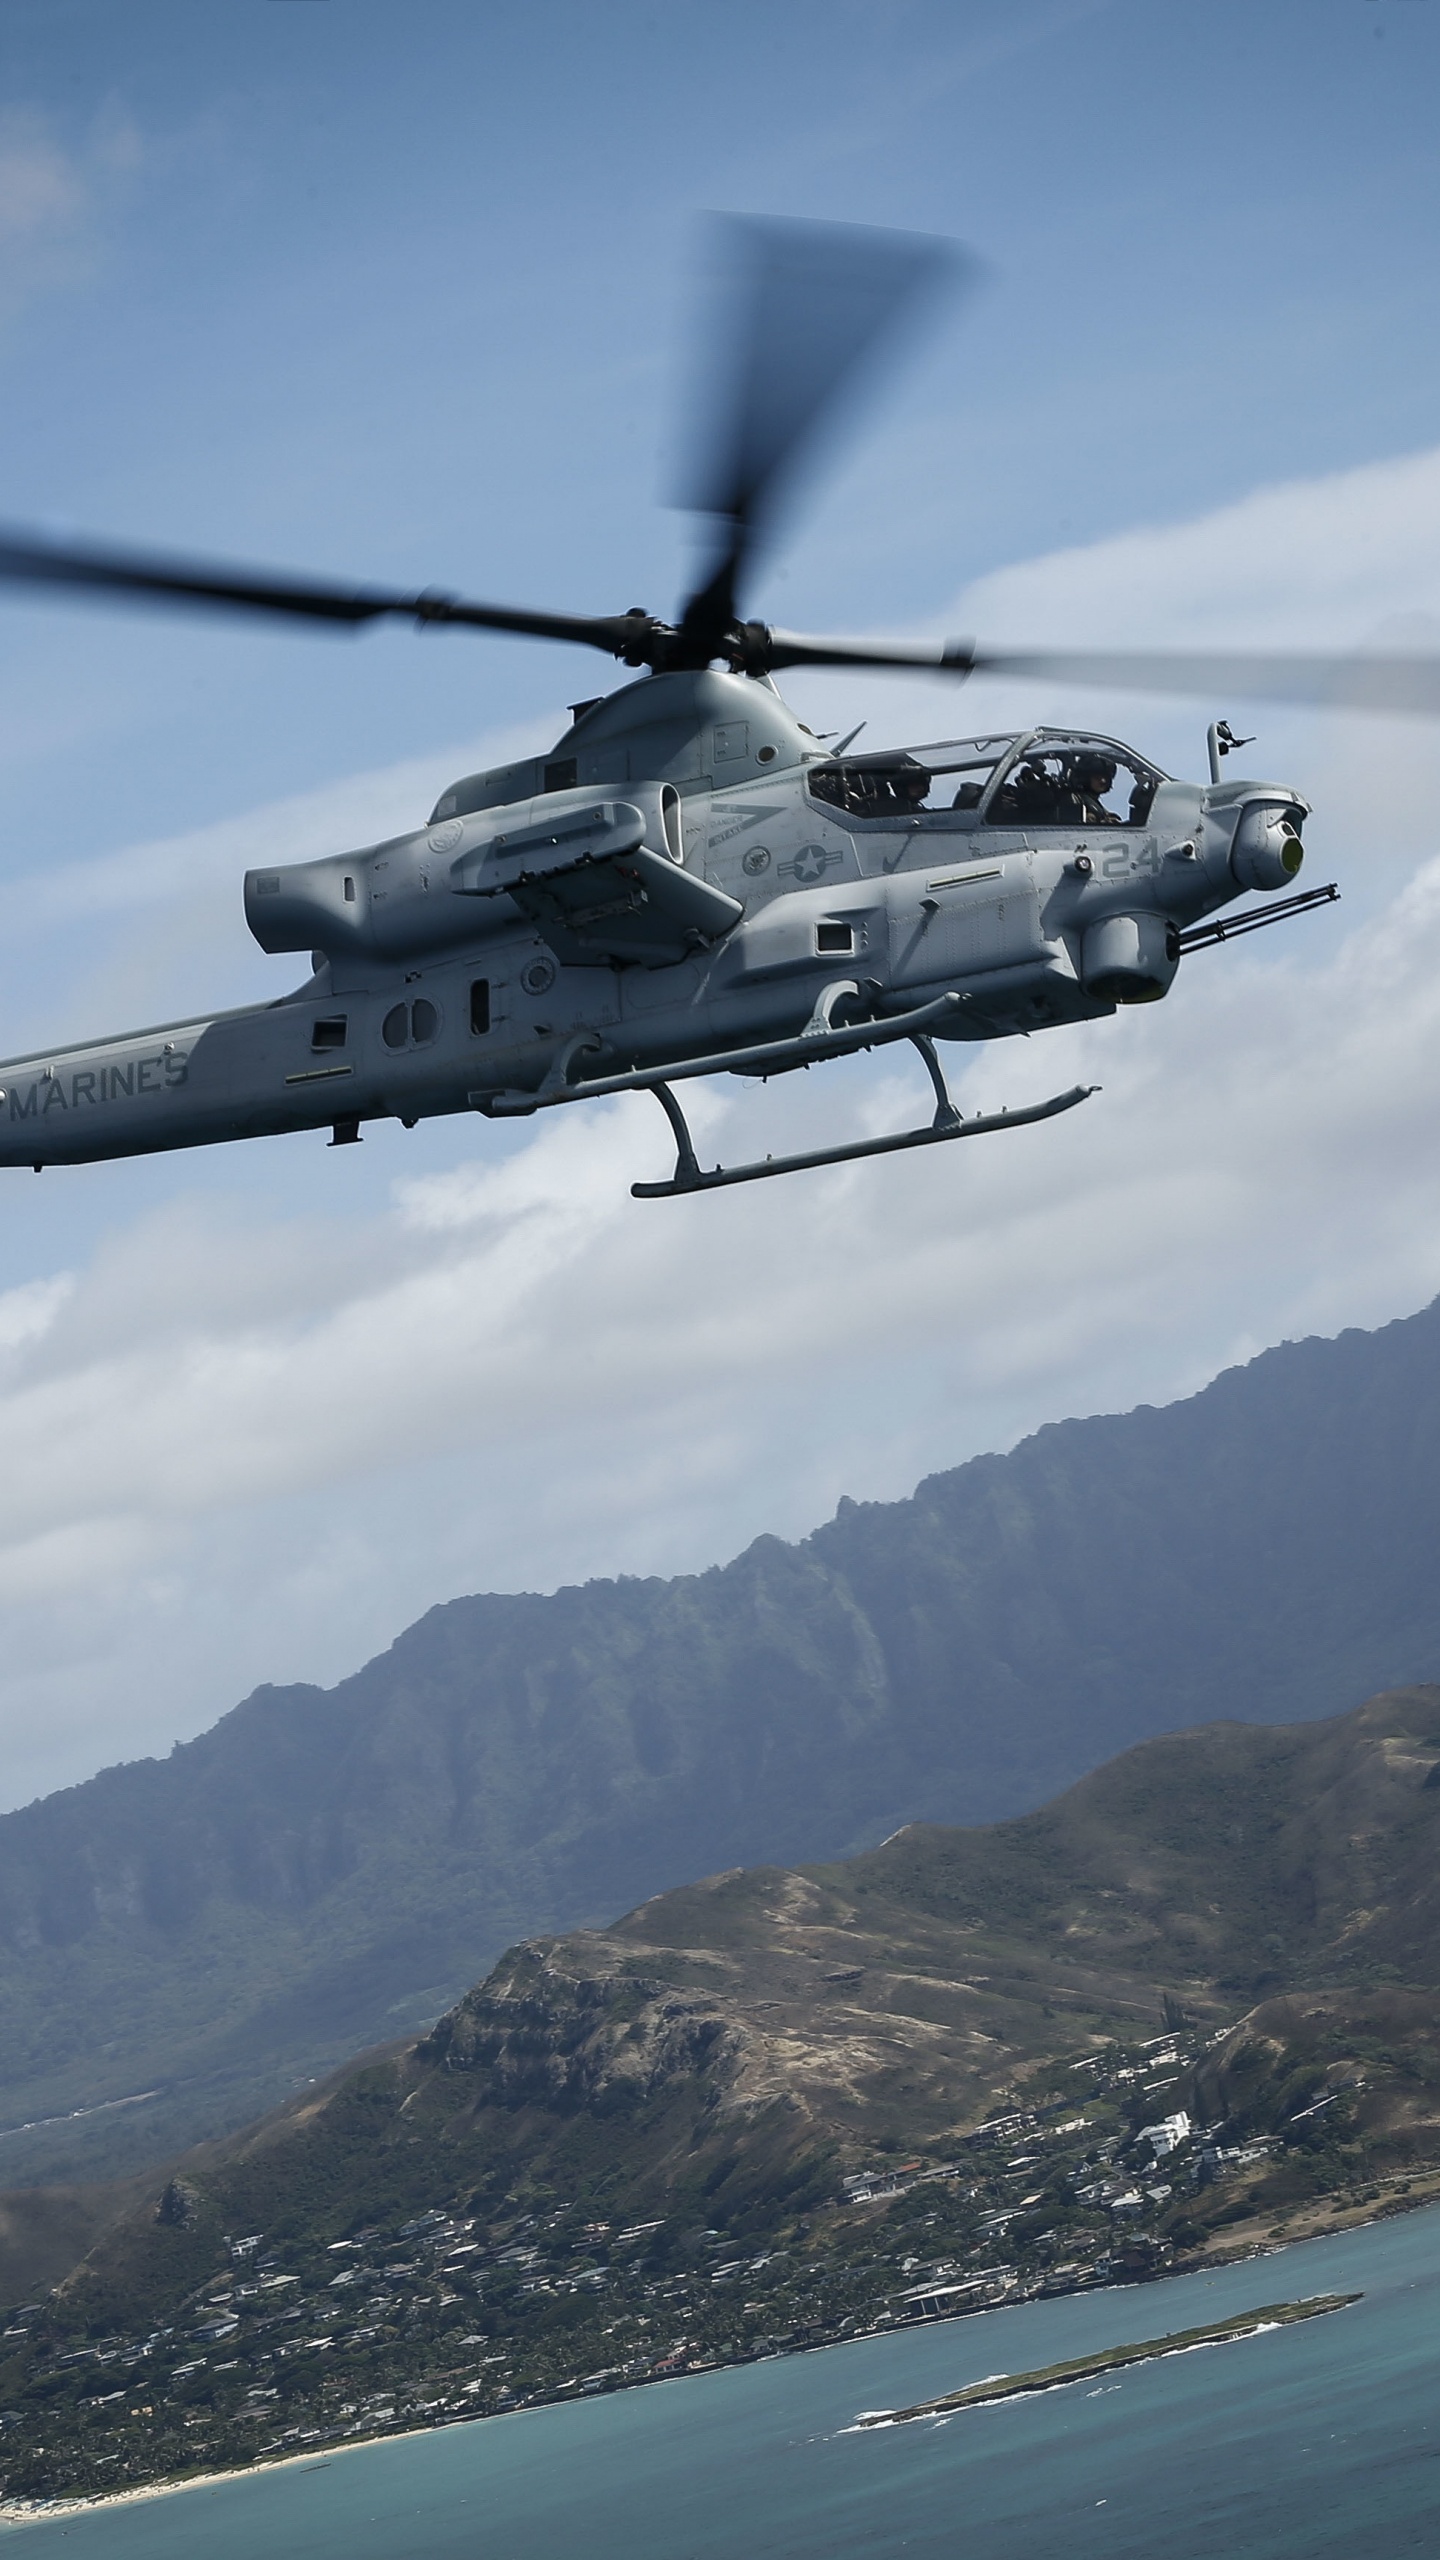 Helicóptero Blanco y Negro Sobrevolando la Montaña Durante el Día. Wallpaper in 1440x2560 Resolution